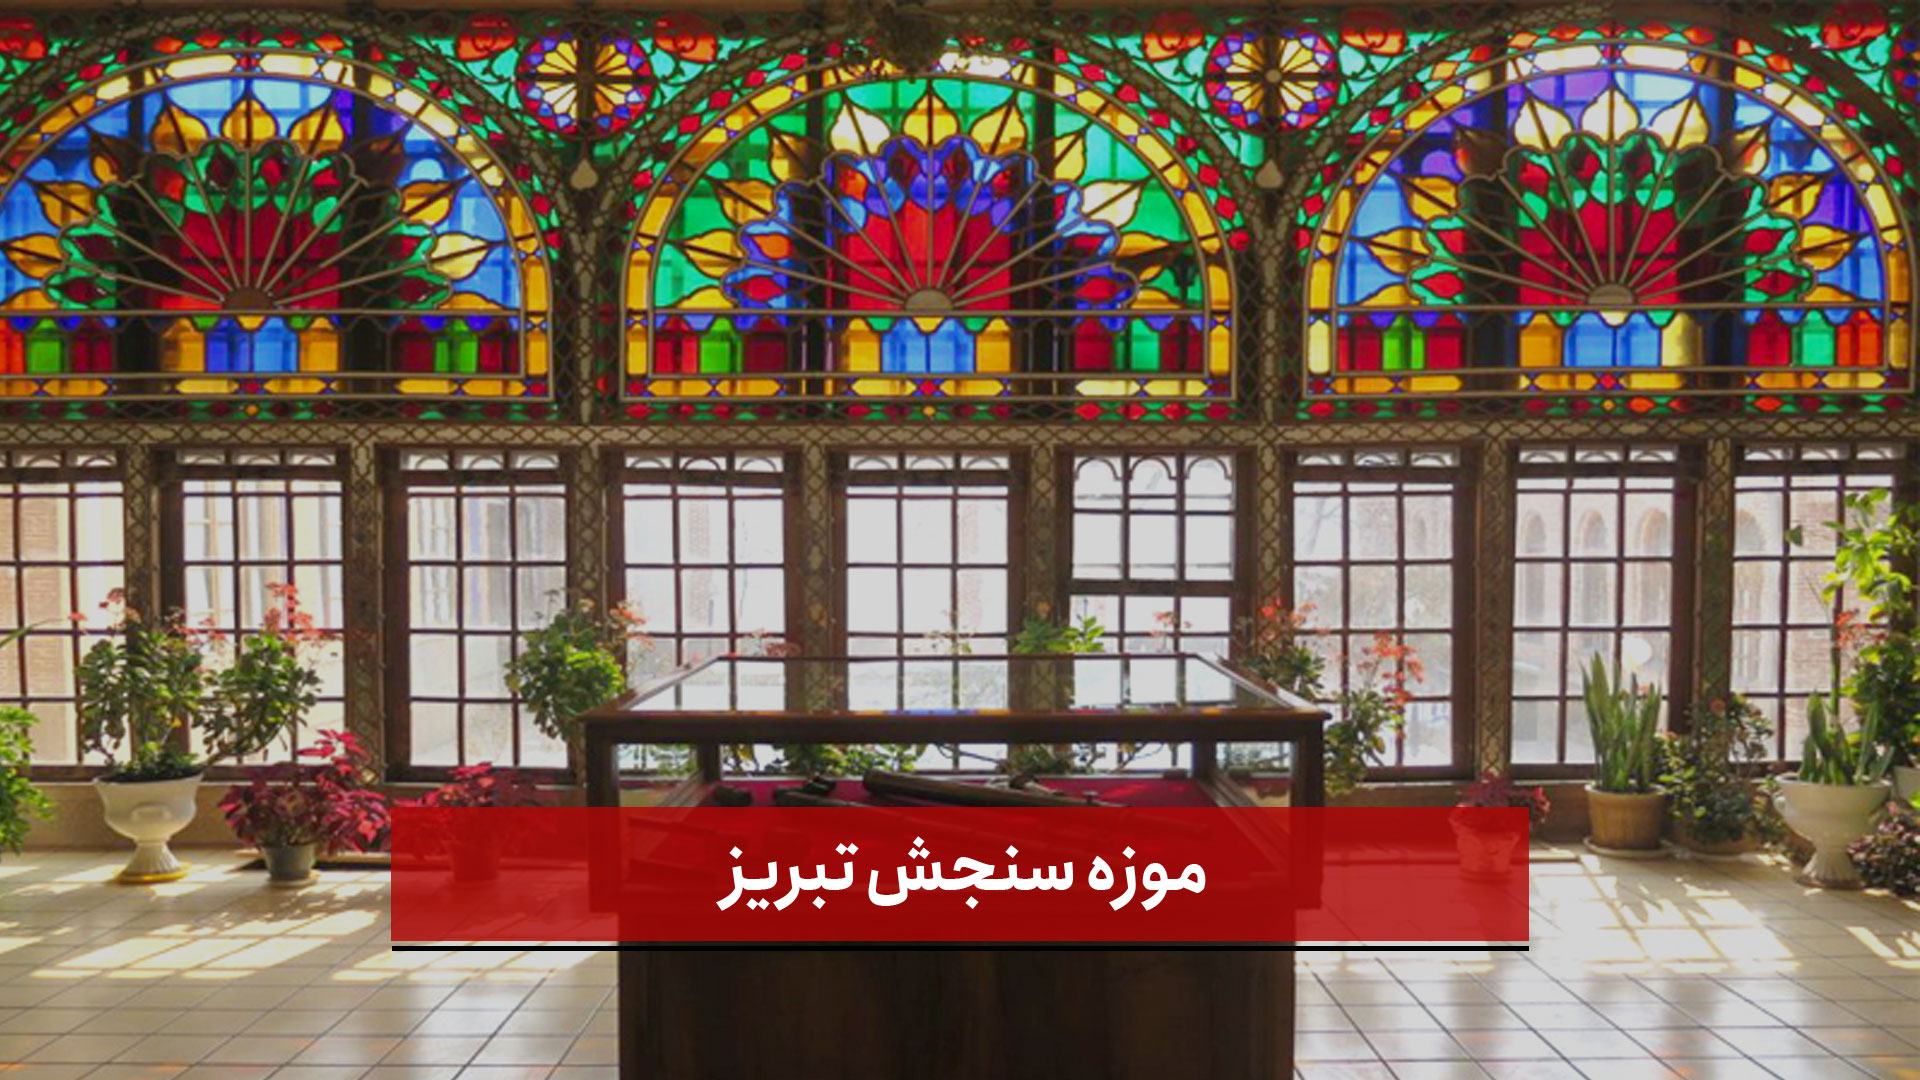 فیلم | موزه سنجش در تبریز